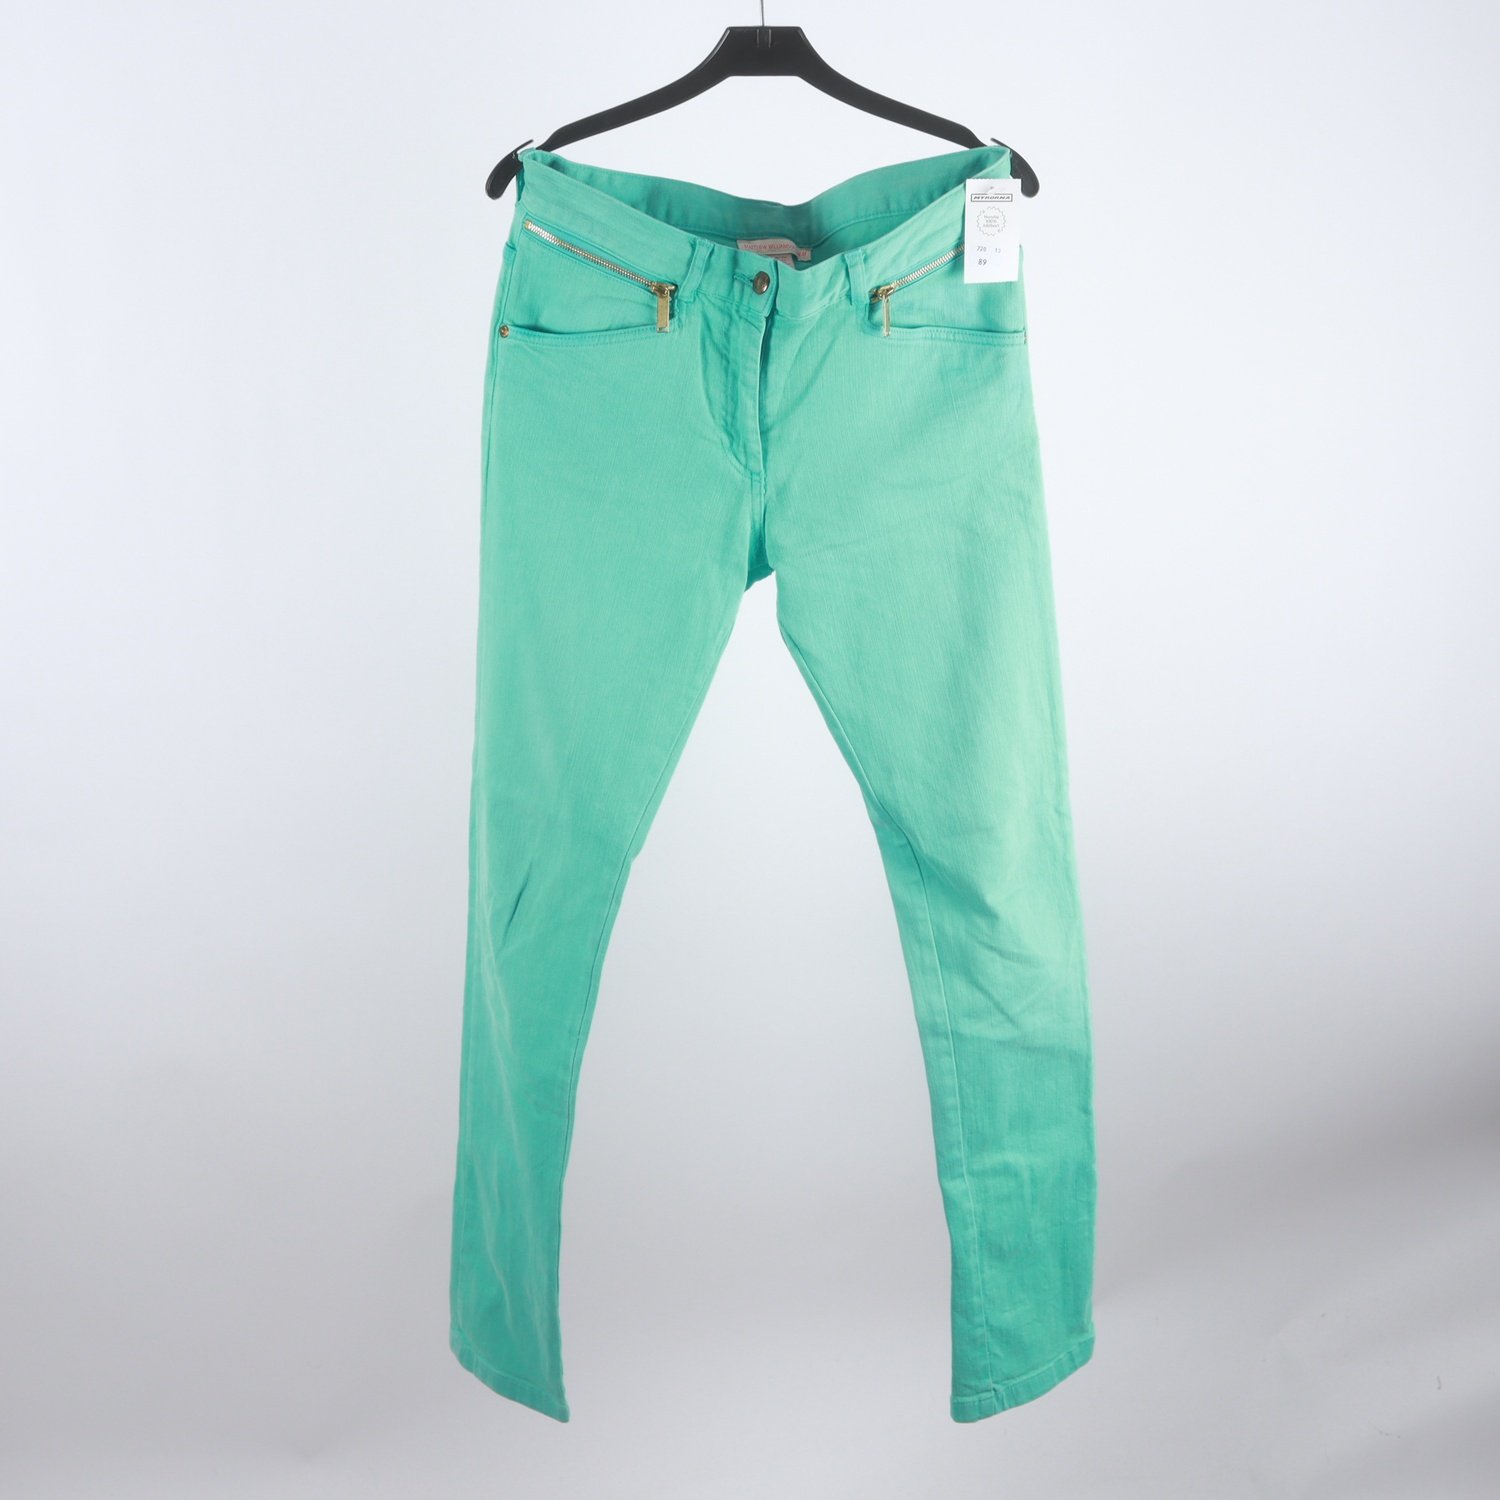 Jeans, Matthew Williams x H&M, turkos, stl. 40